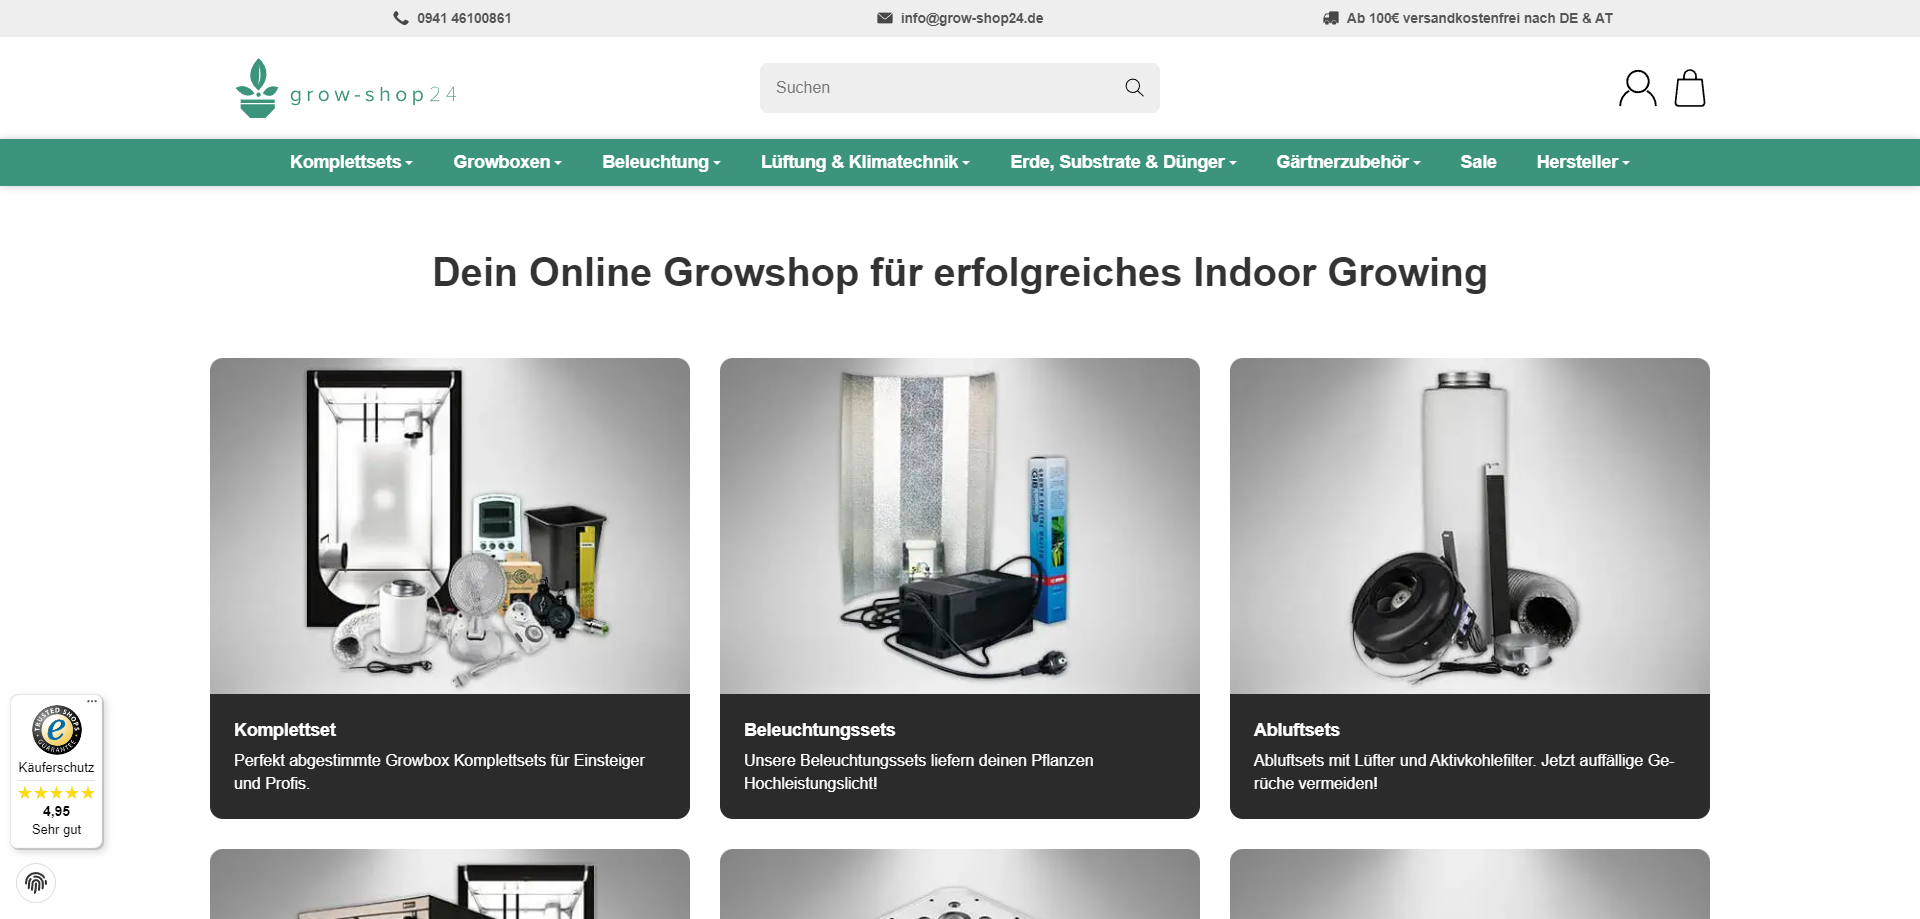 FireShot Capture 287 - Online Growshop für Indoor Growing - grow-shop24.de - www.grow-shop24.de.png